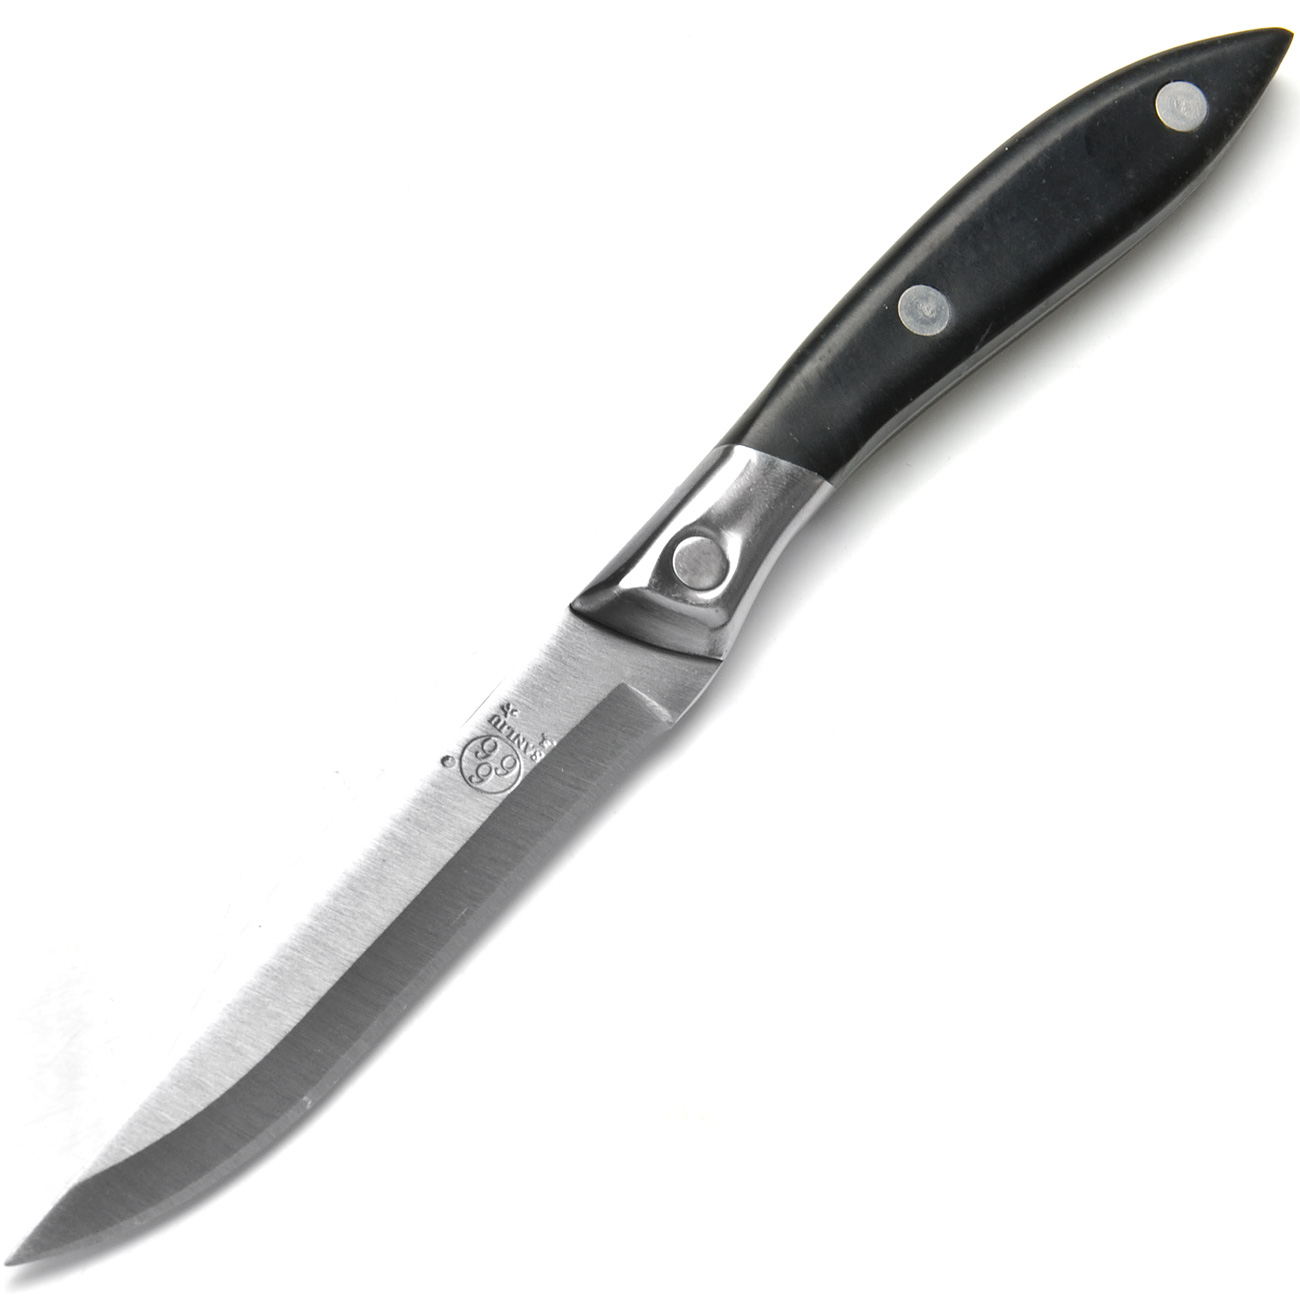 фото Нож универсальный, цвет: серебристый, черный, длина лезвия 9,2 см Sanliu 666